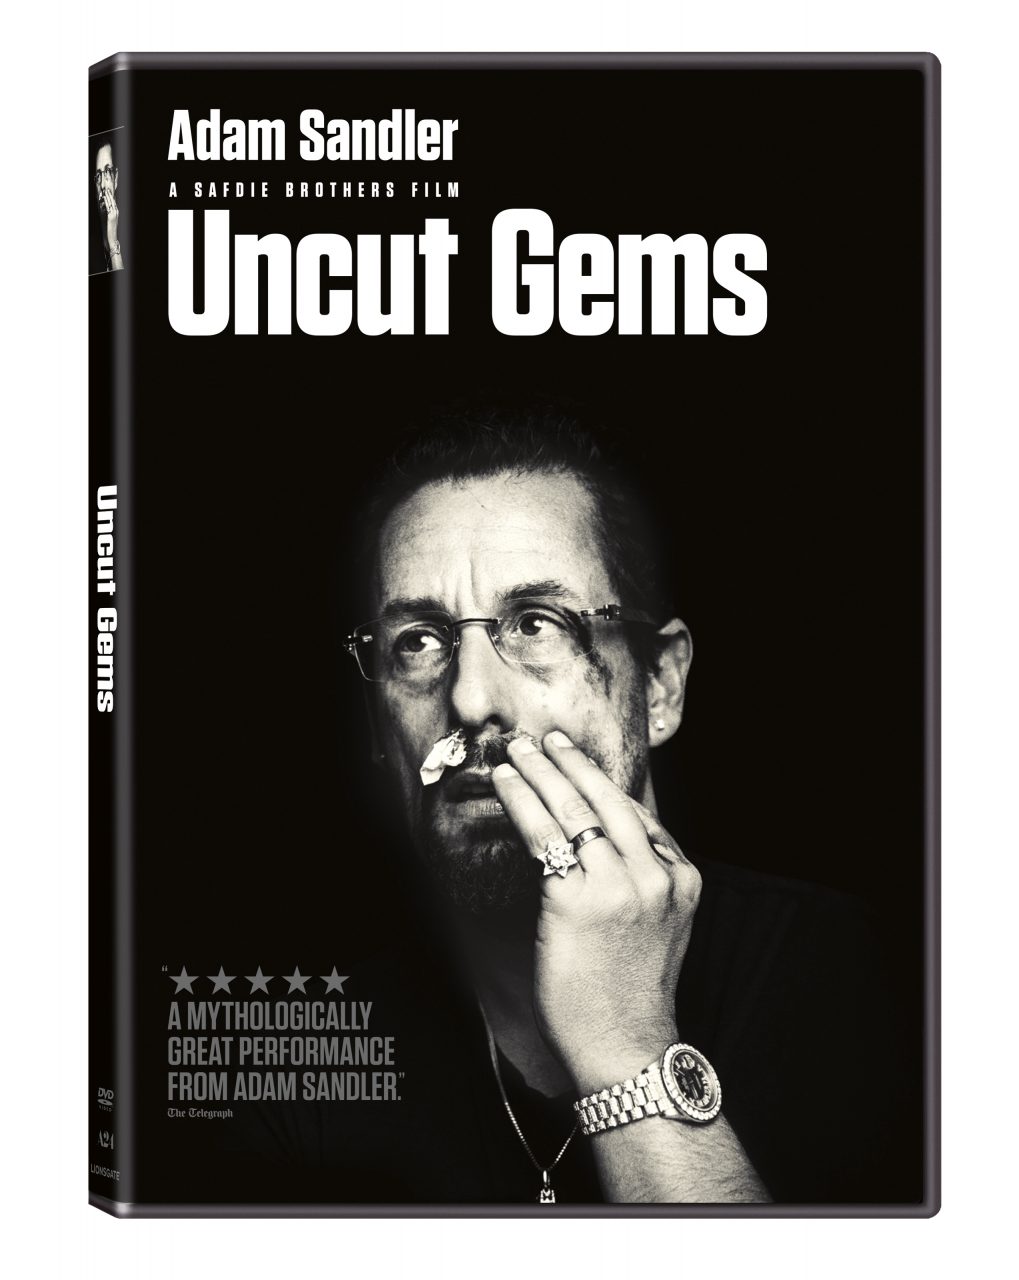 Uncut Gems DVD cover (Lionsgate Home Entertainment)